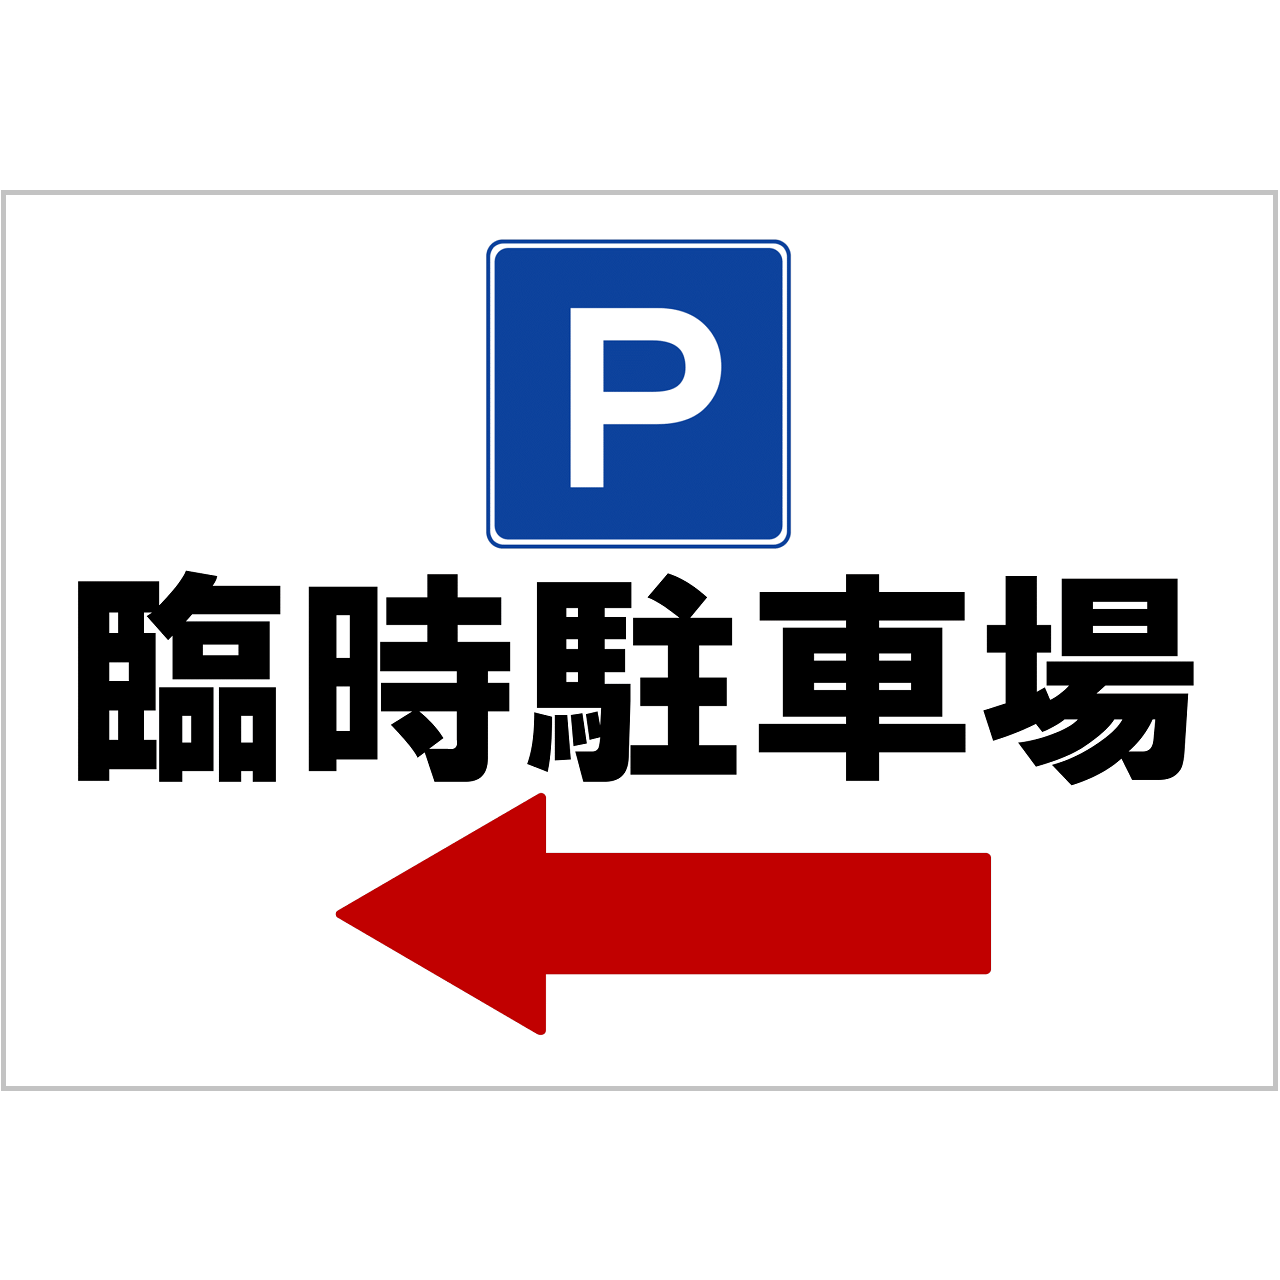 臨時駐車場ご案内の張り紙（Ａ４・ヨコ・方向指示あり・左方向）